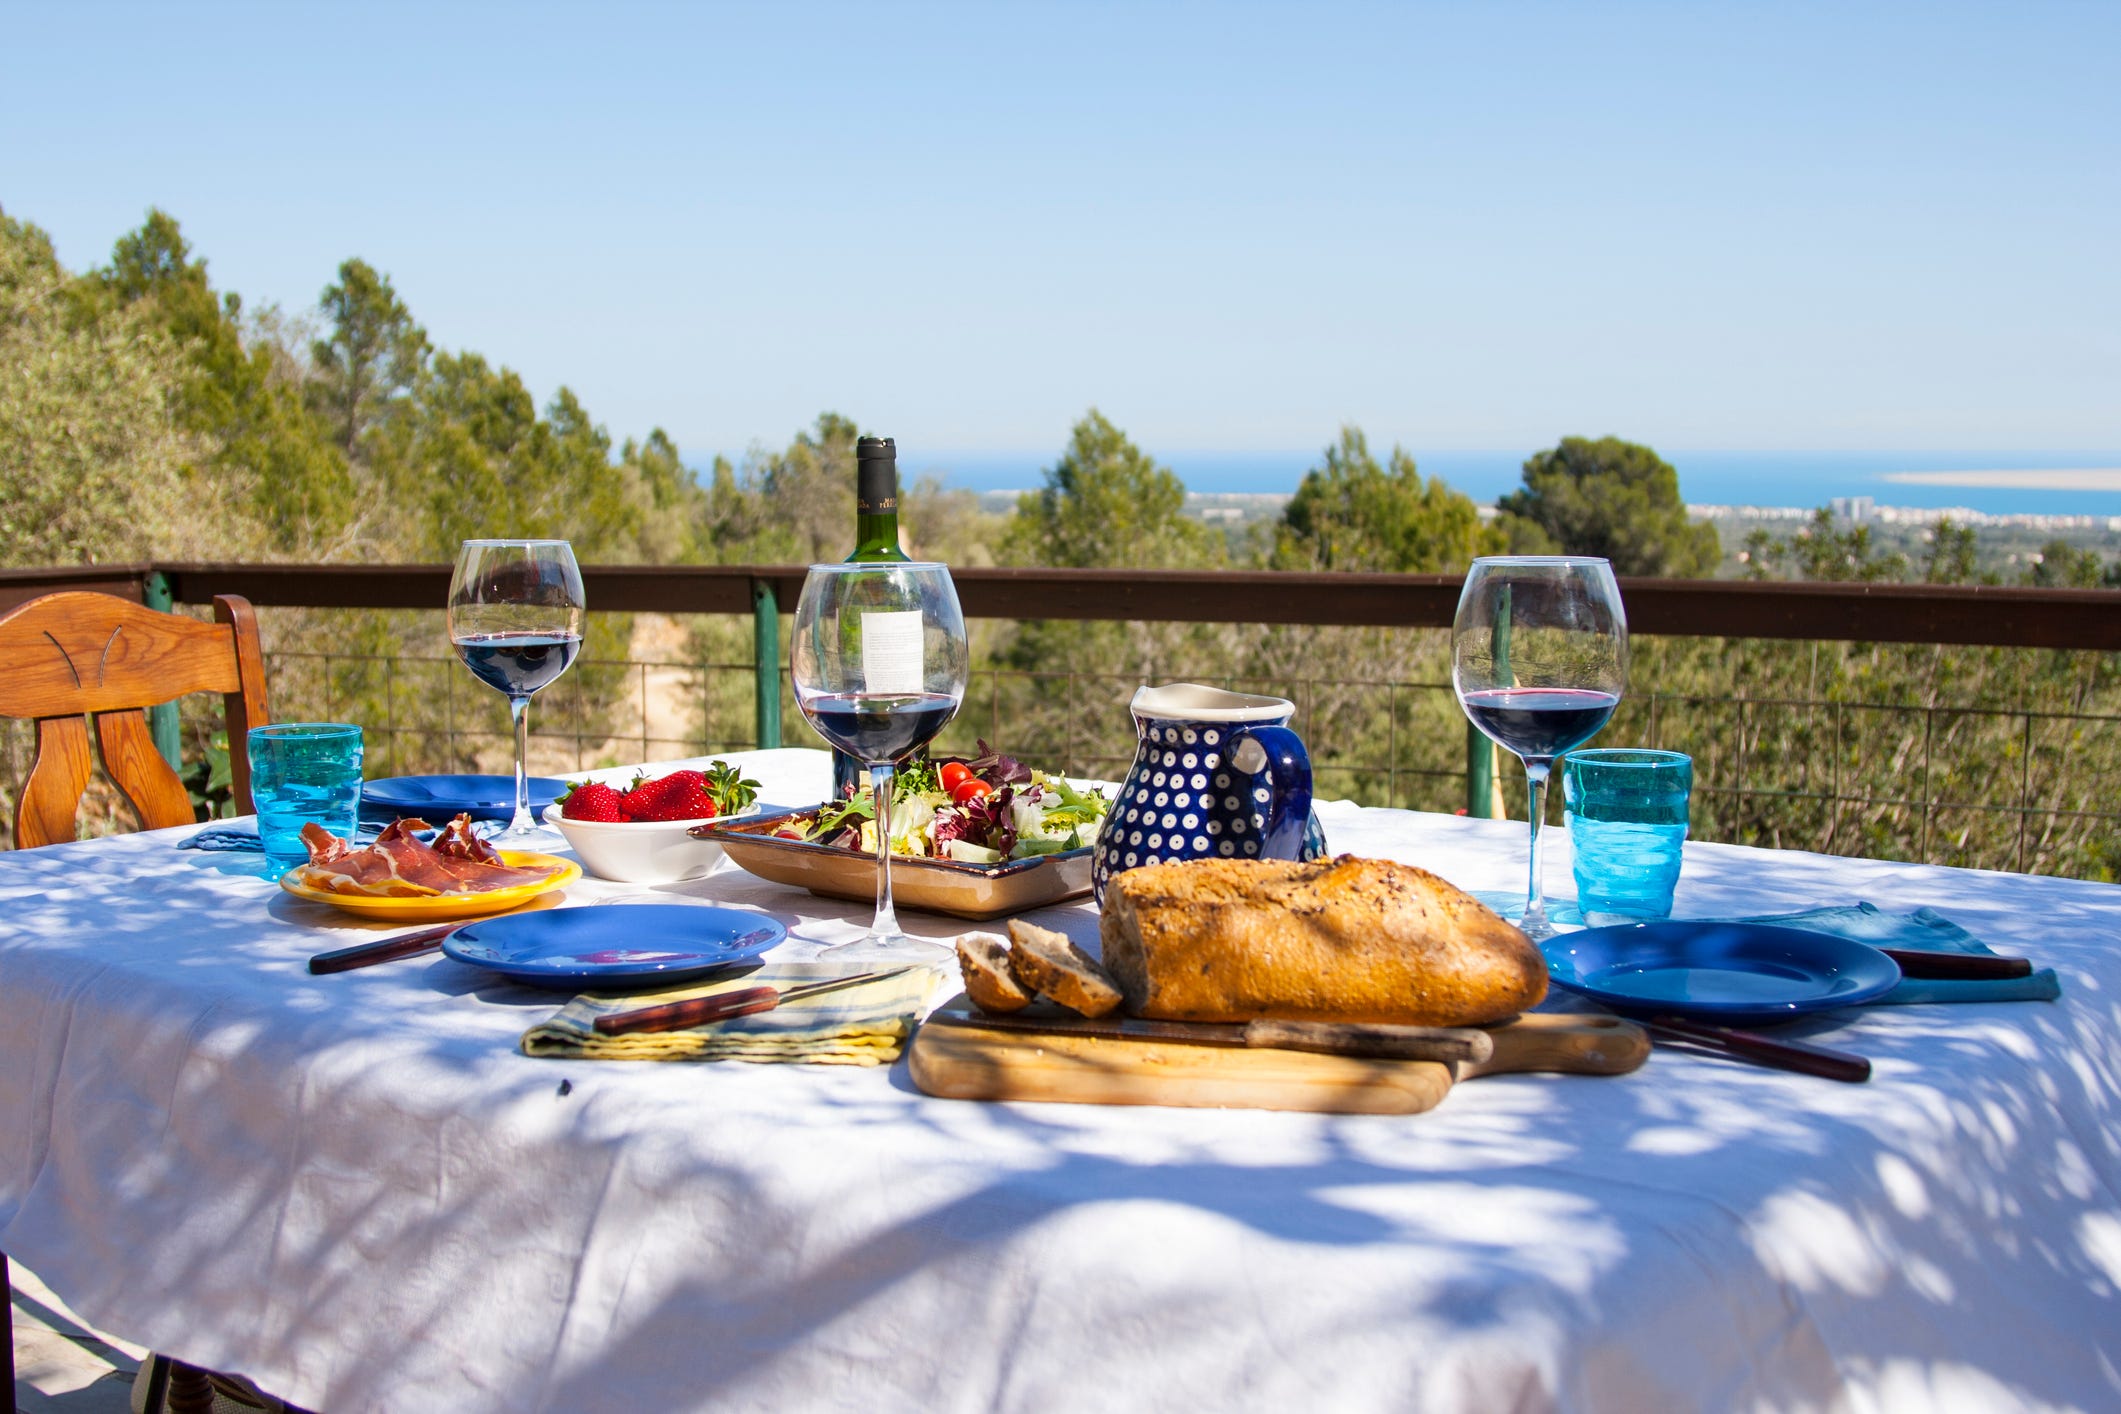 Ein Tisch mit Blick auf das Meer, darauf ein Laib Brot, ein großer Salat und mehrere Gläser Wein.